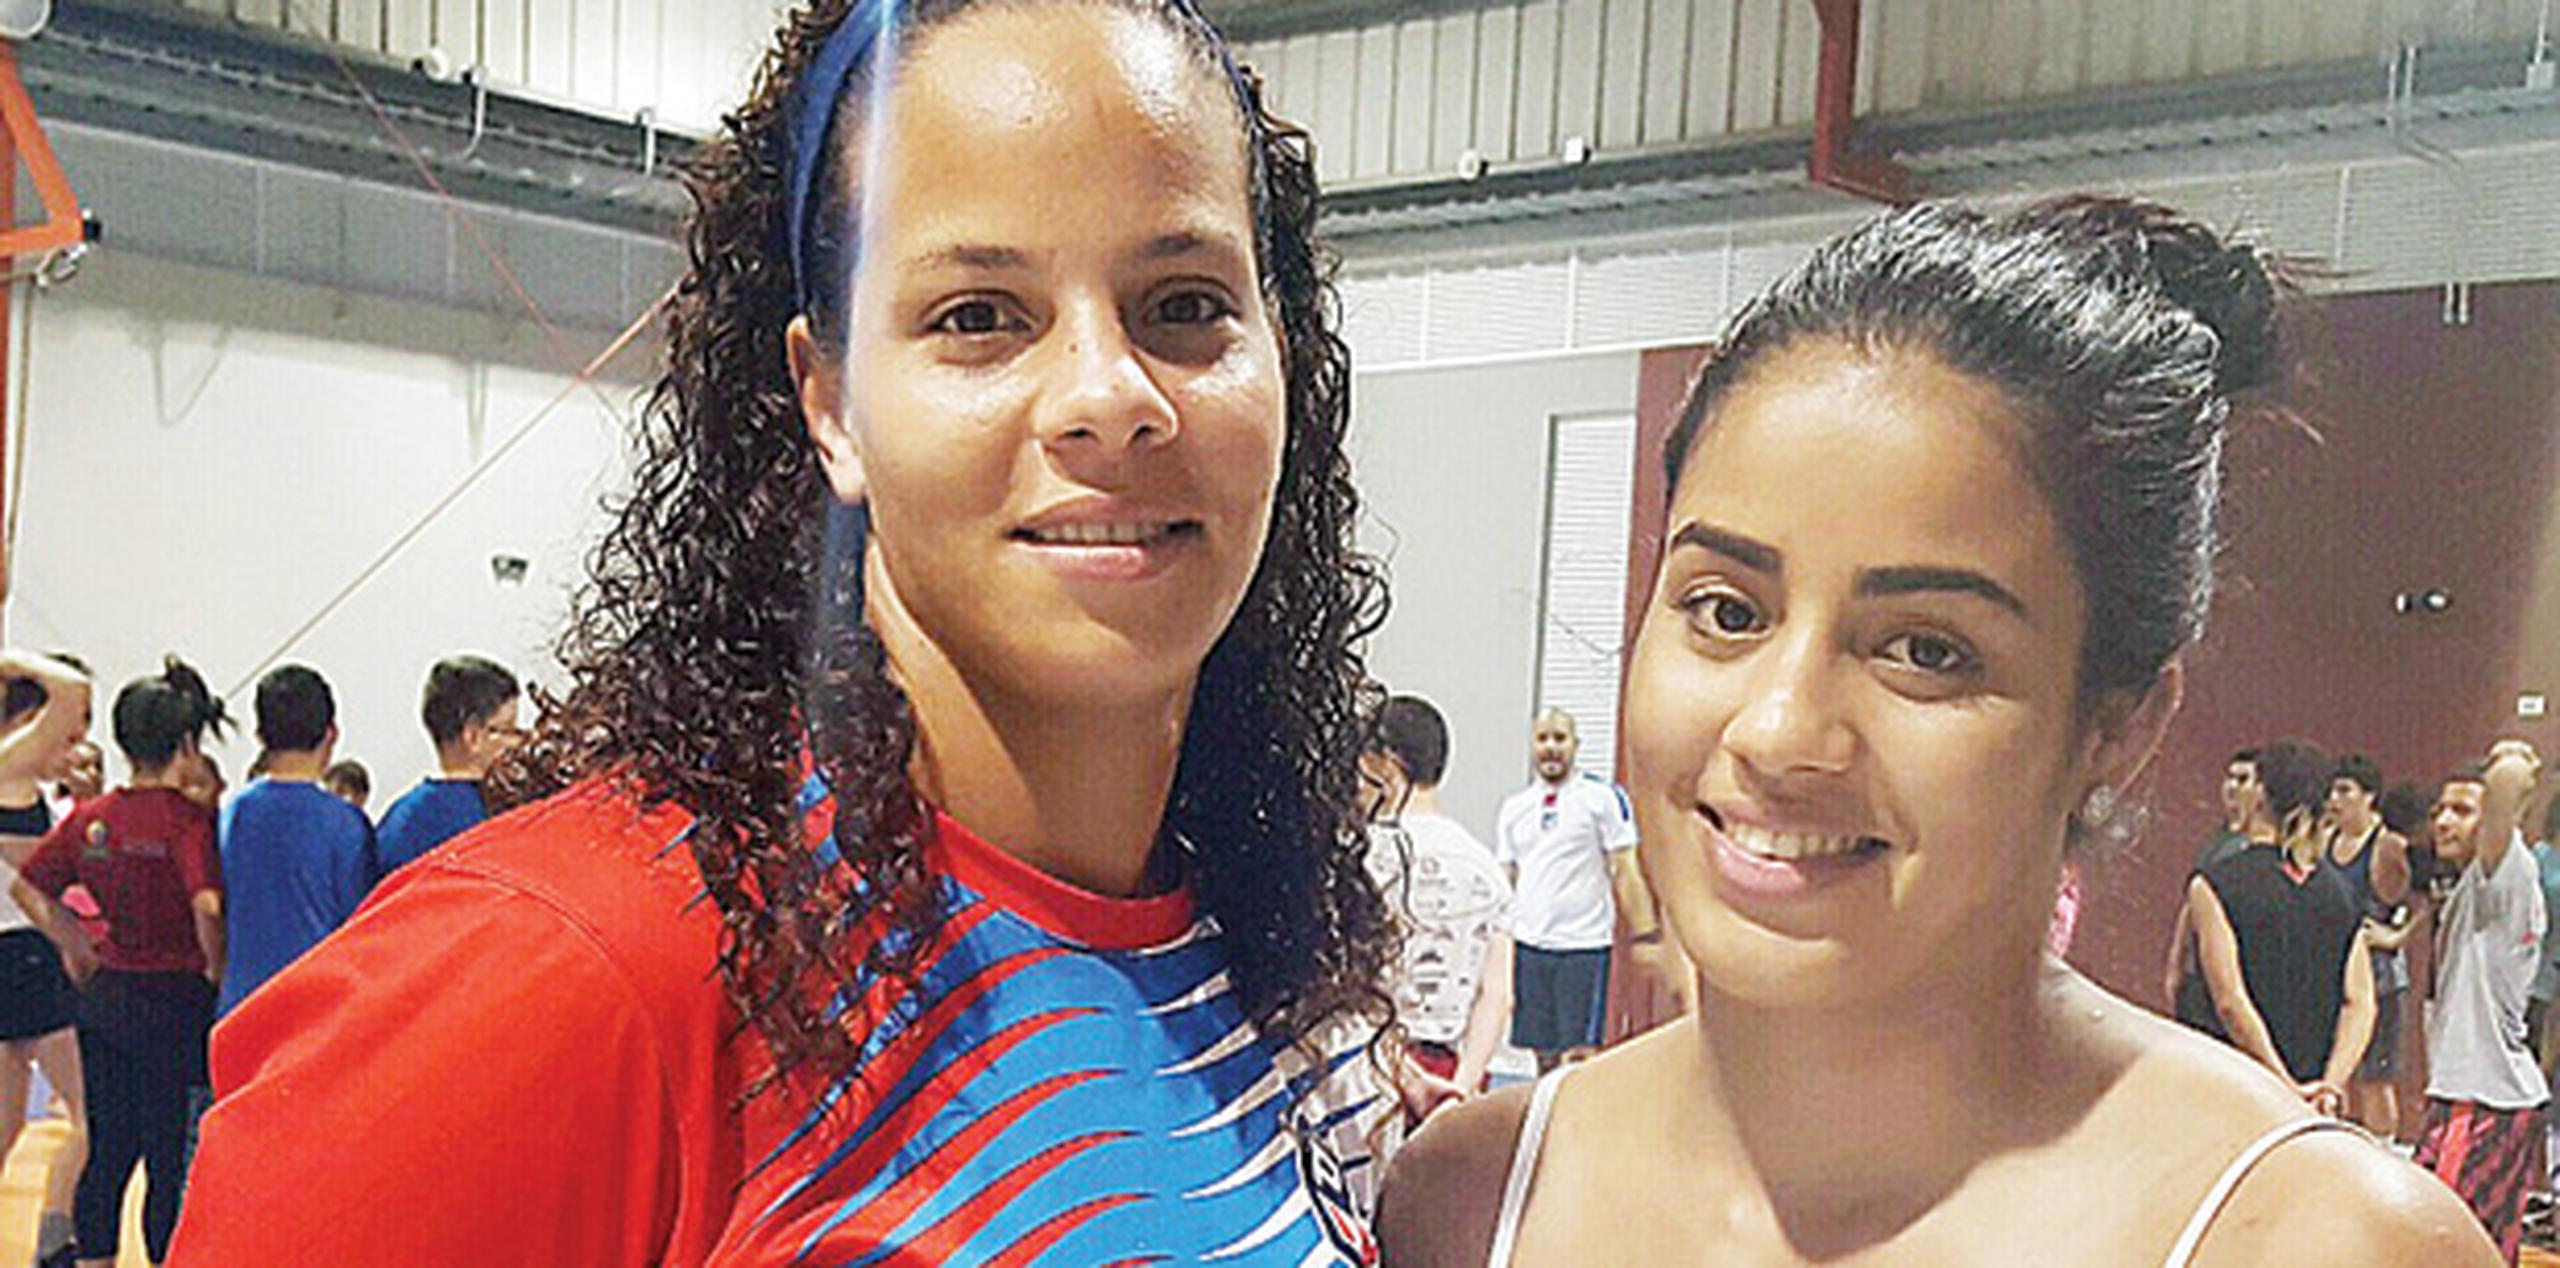 Las peleadoras Dayanara Rivera y Nes Marie Rodríguez viajan esta semana a Cuba para proseguir su entrenamiento de cara al Preolímpico y los Juegos de Río.